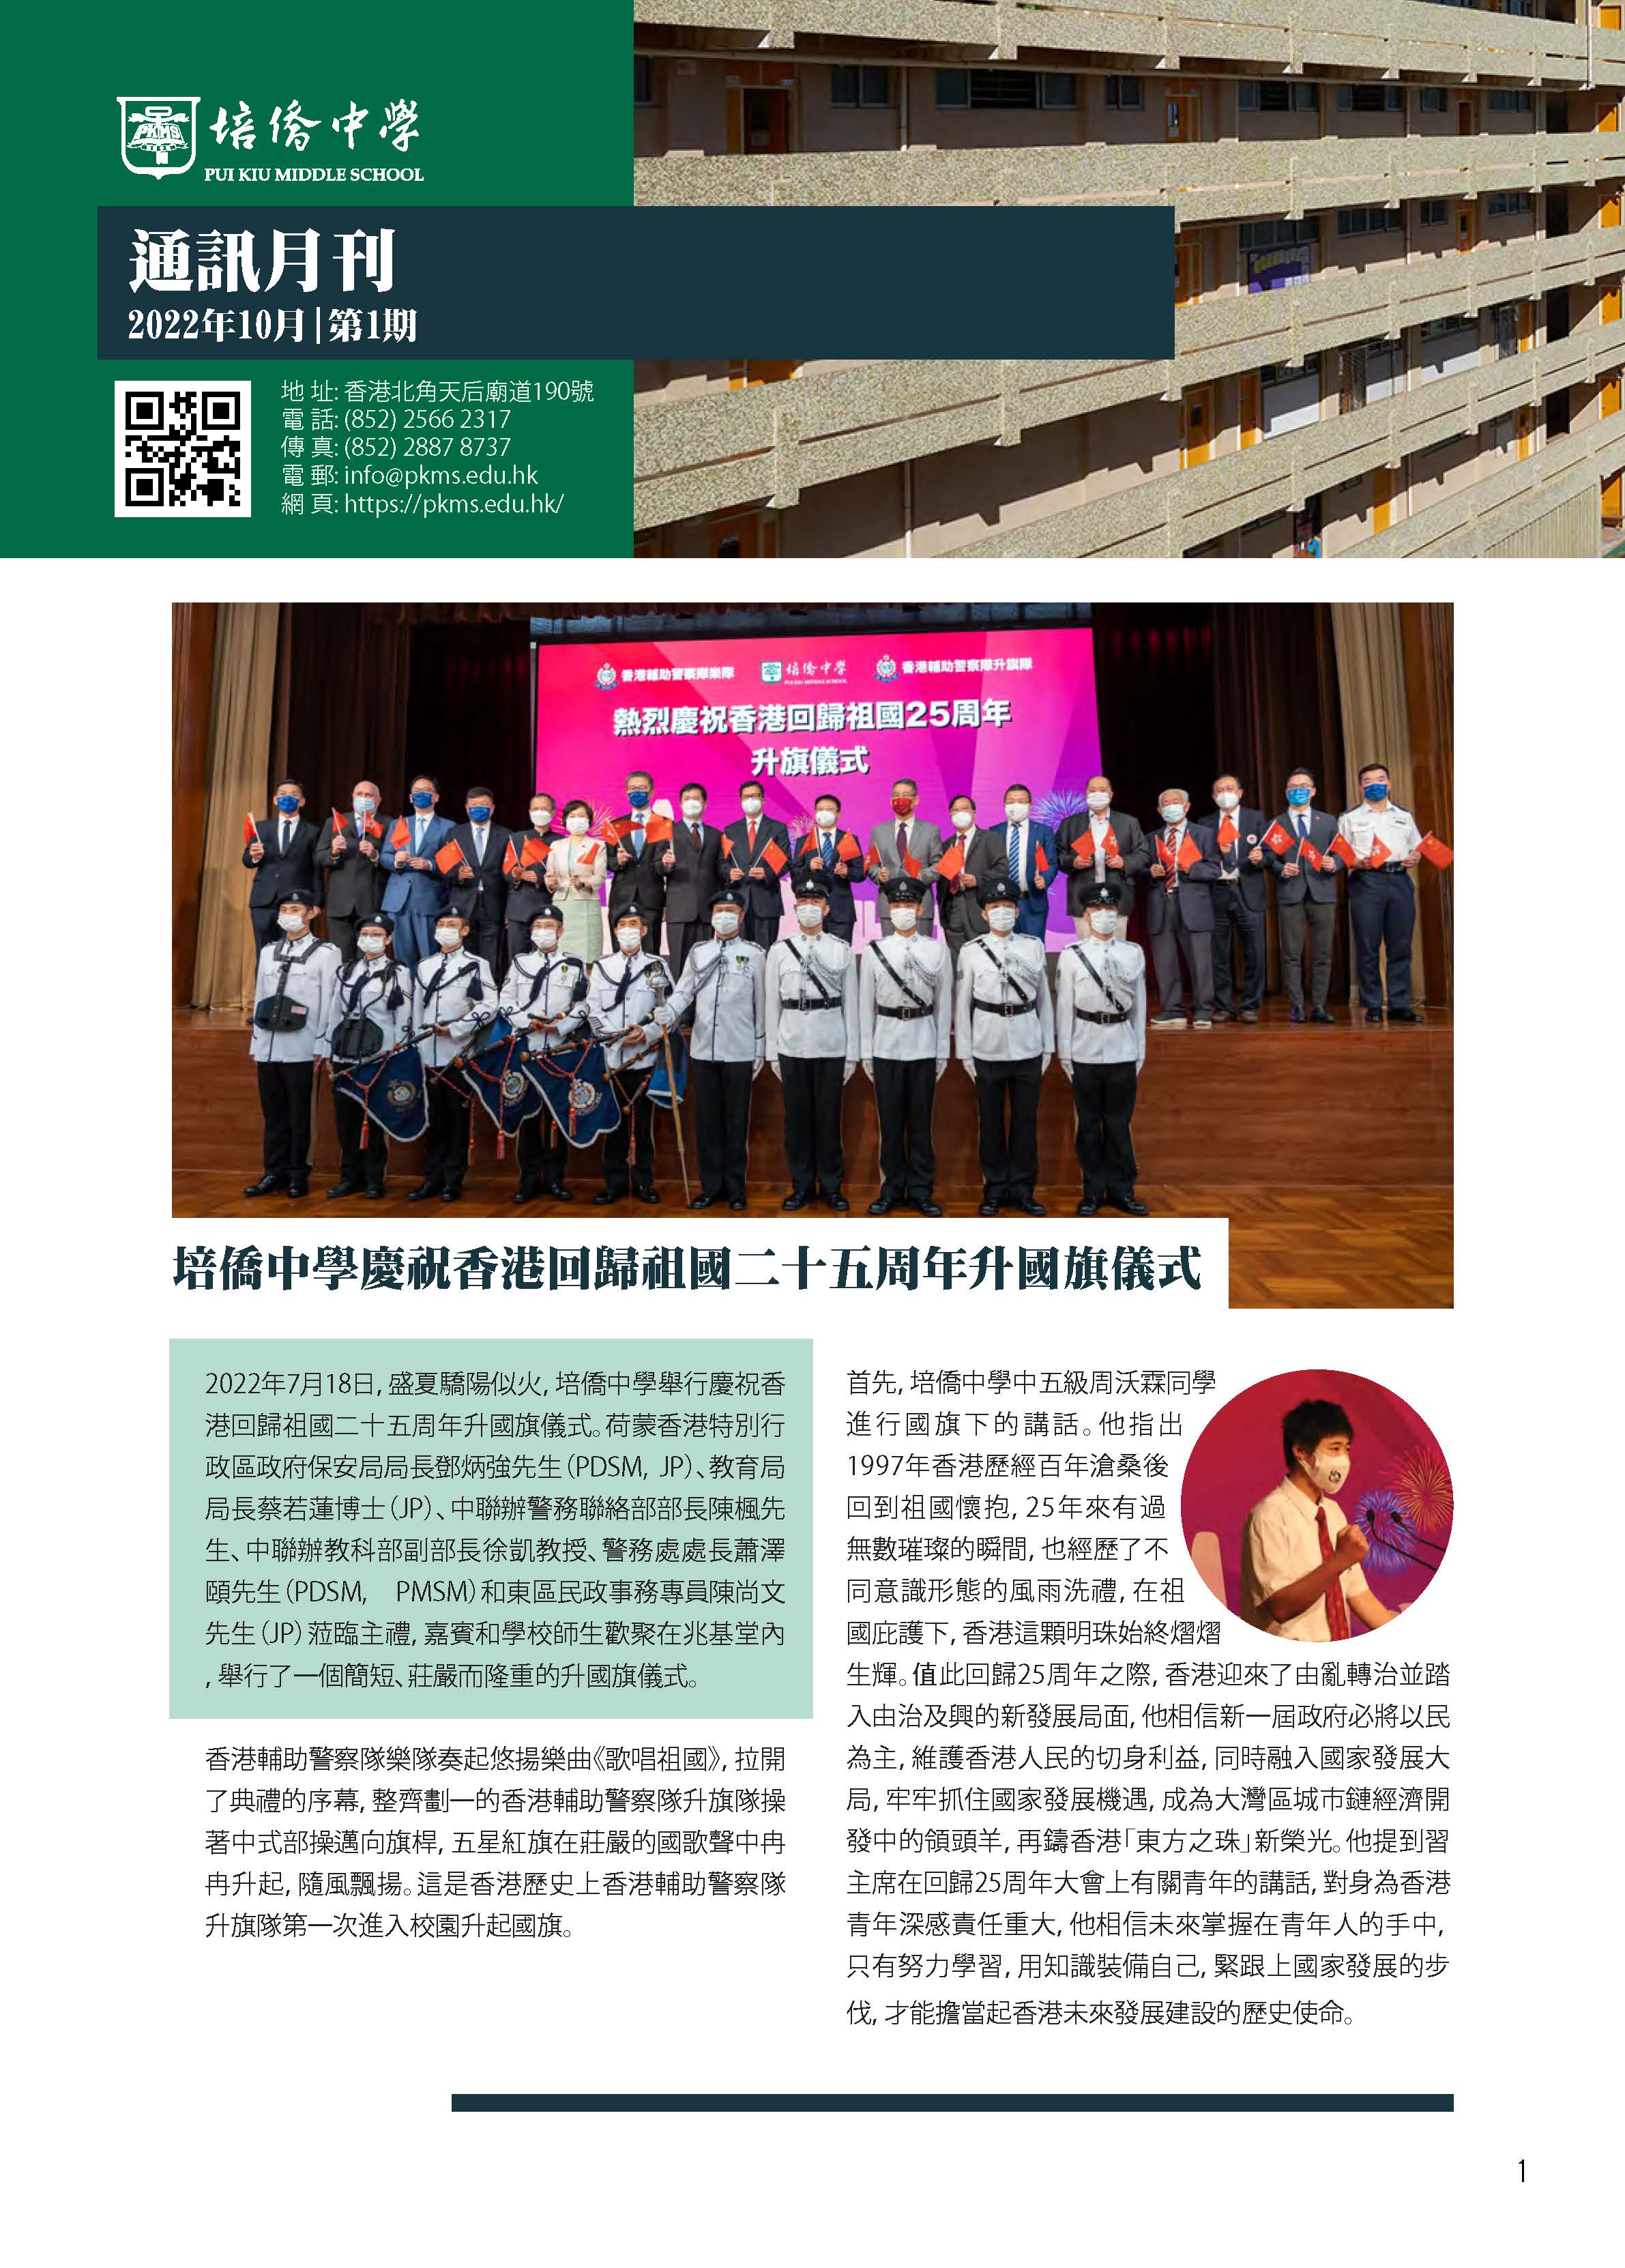 培僑中學通訊期刊2022.10_Page_01.jpg